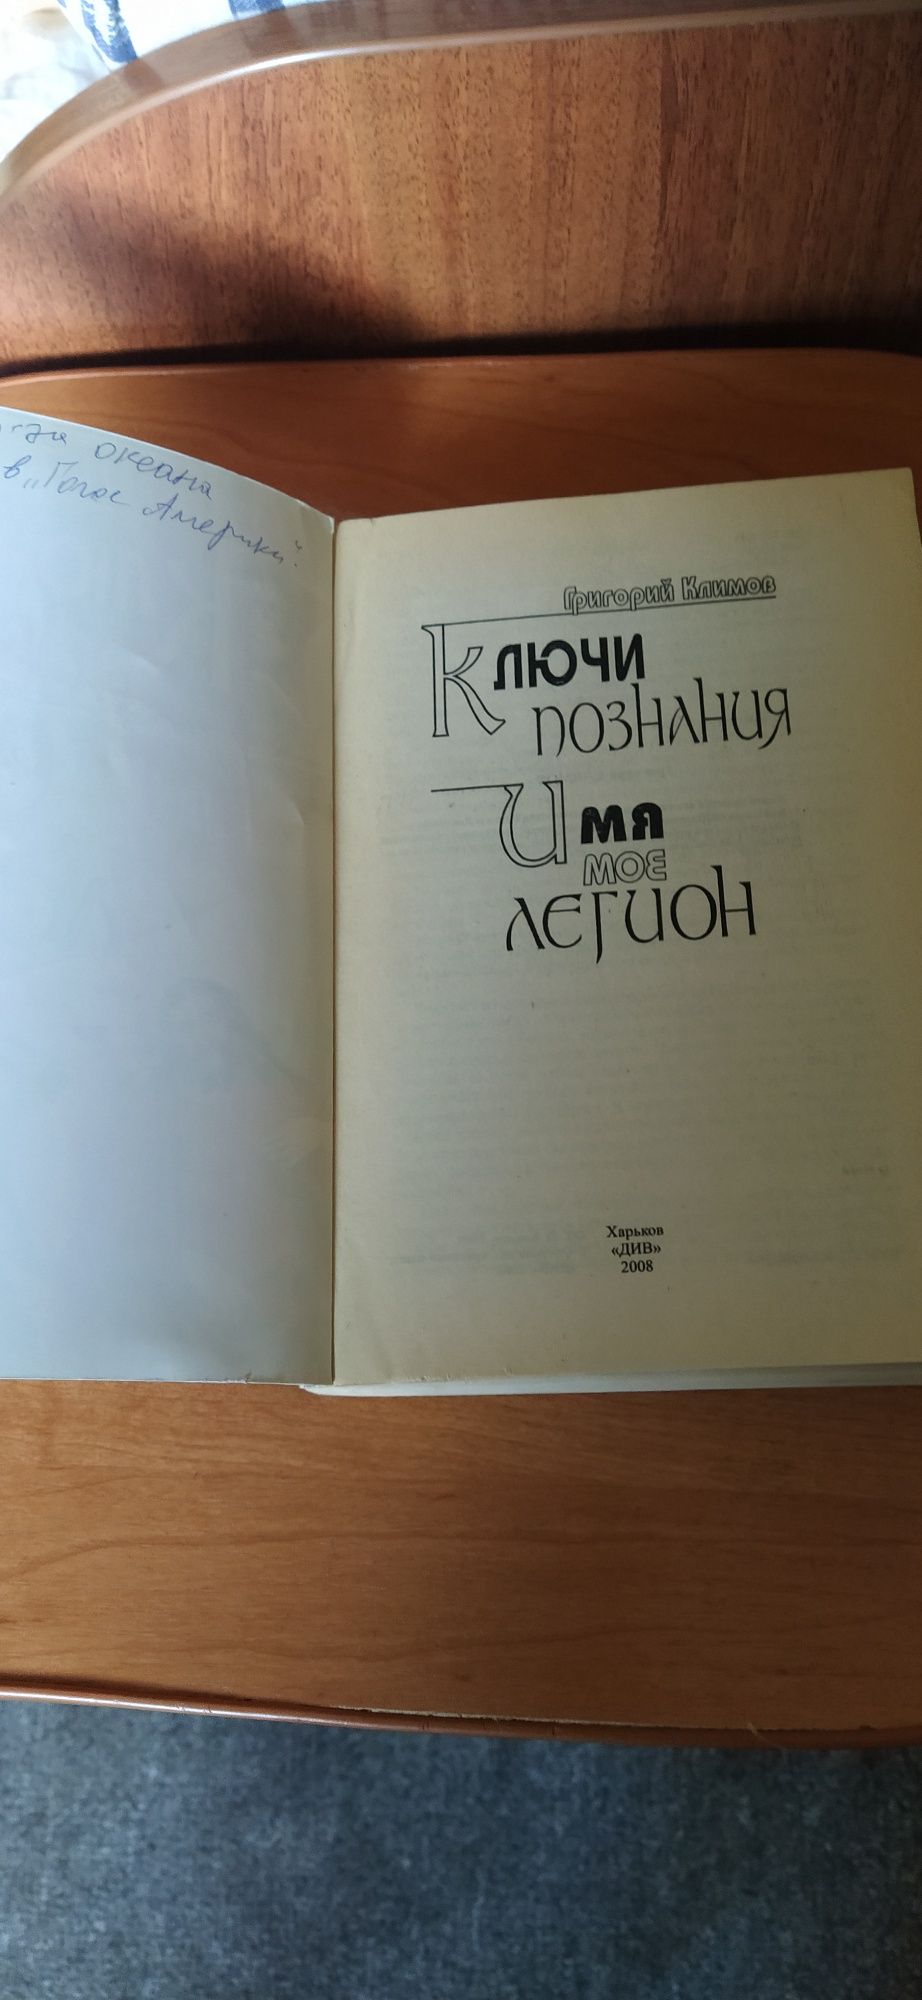 Книга Георгия Климова Ключи познания Имя мое легион